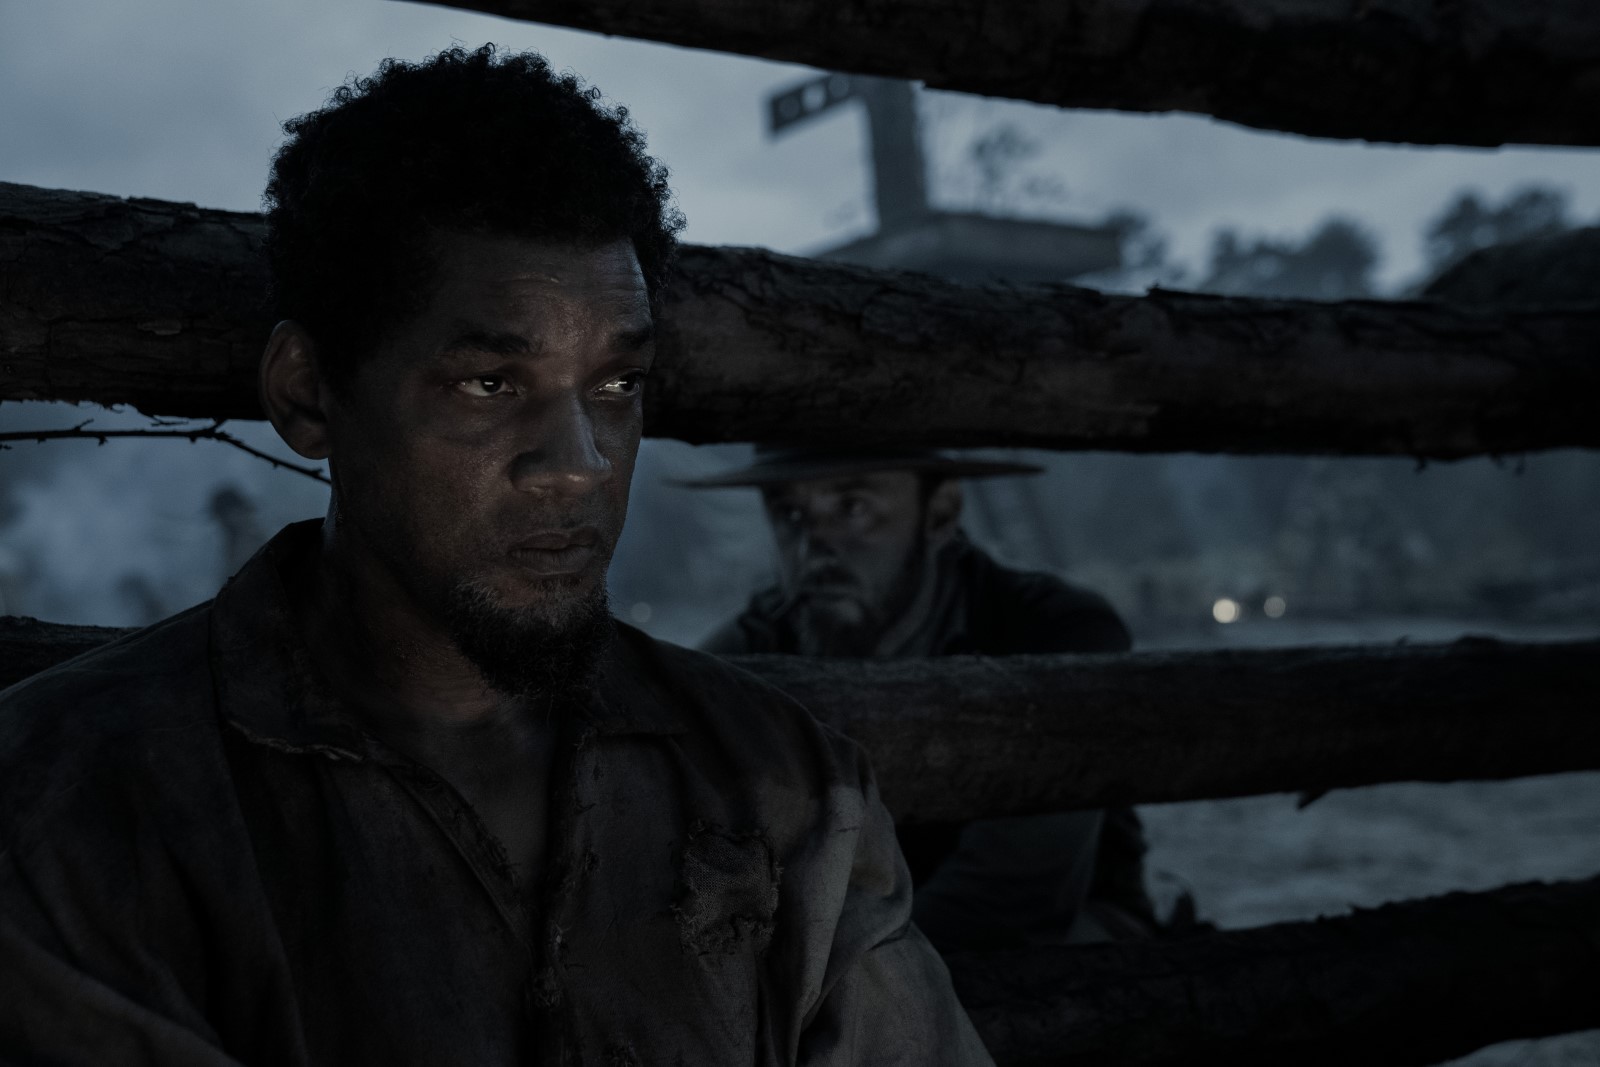 Historical film “Emancipation” – Dark survival thriller in an apocalyptic war landscape